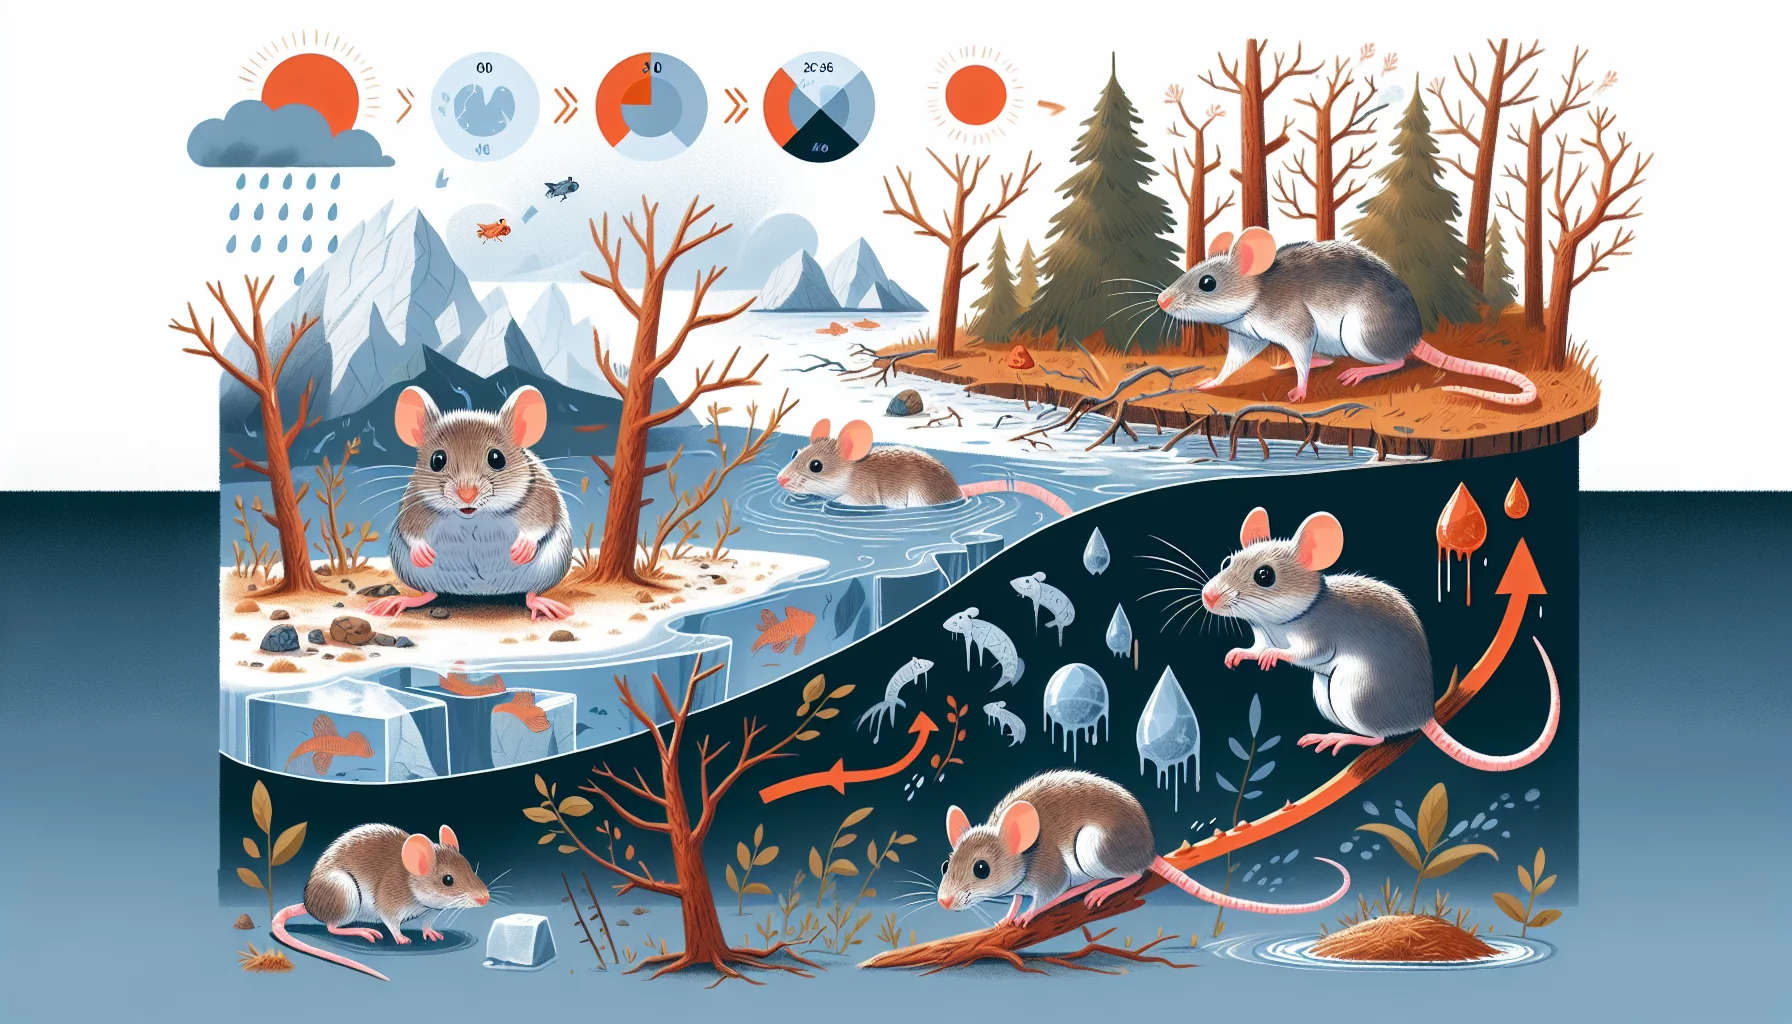 Comment les changements climatiques affectent-ils les comportements des souris ?